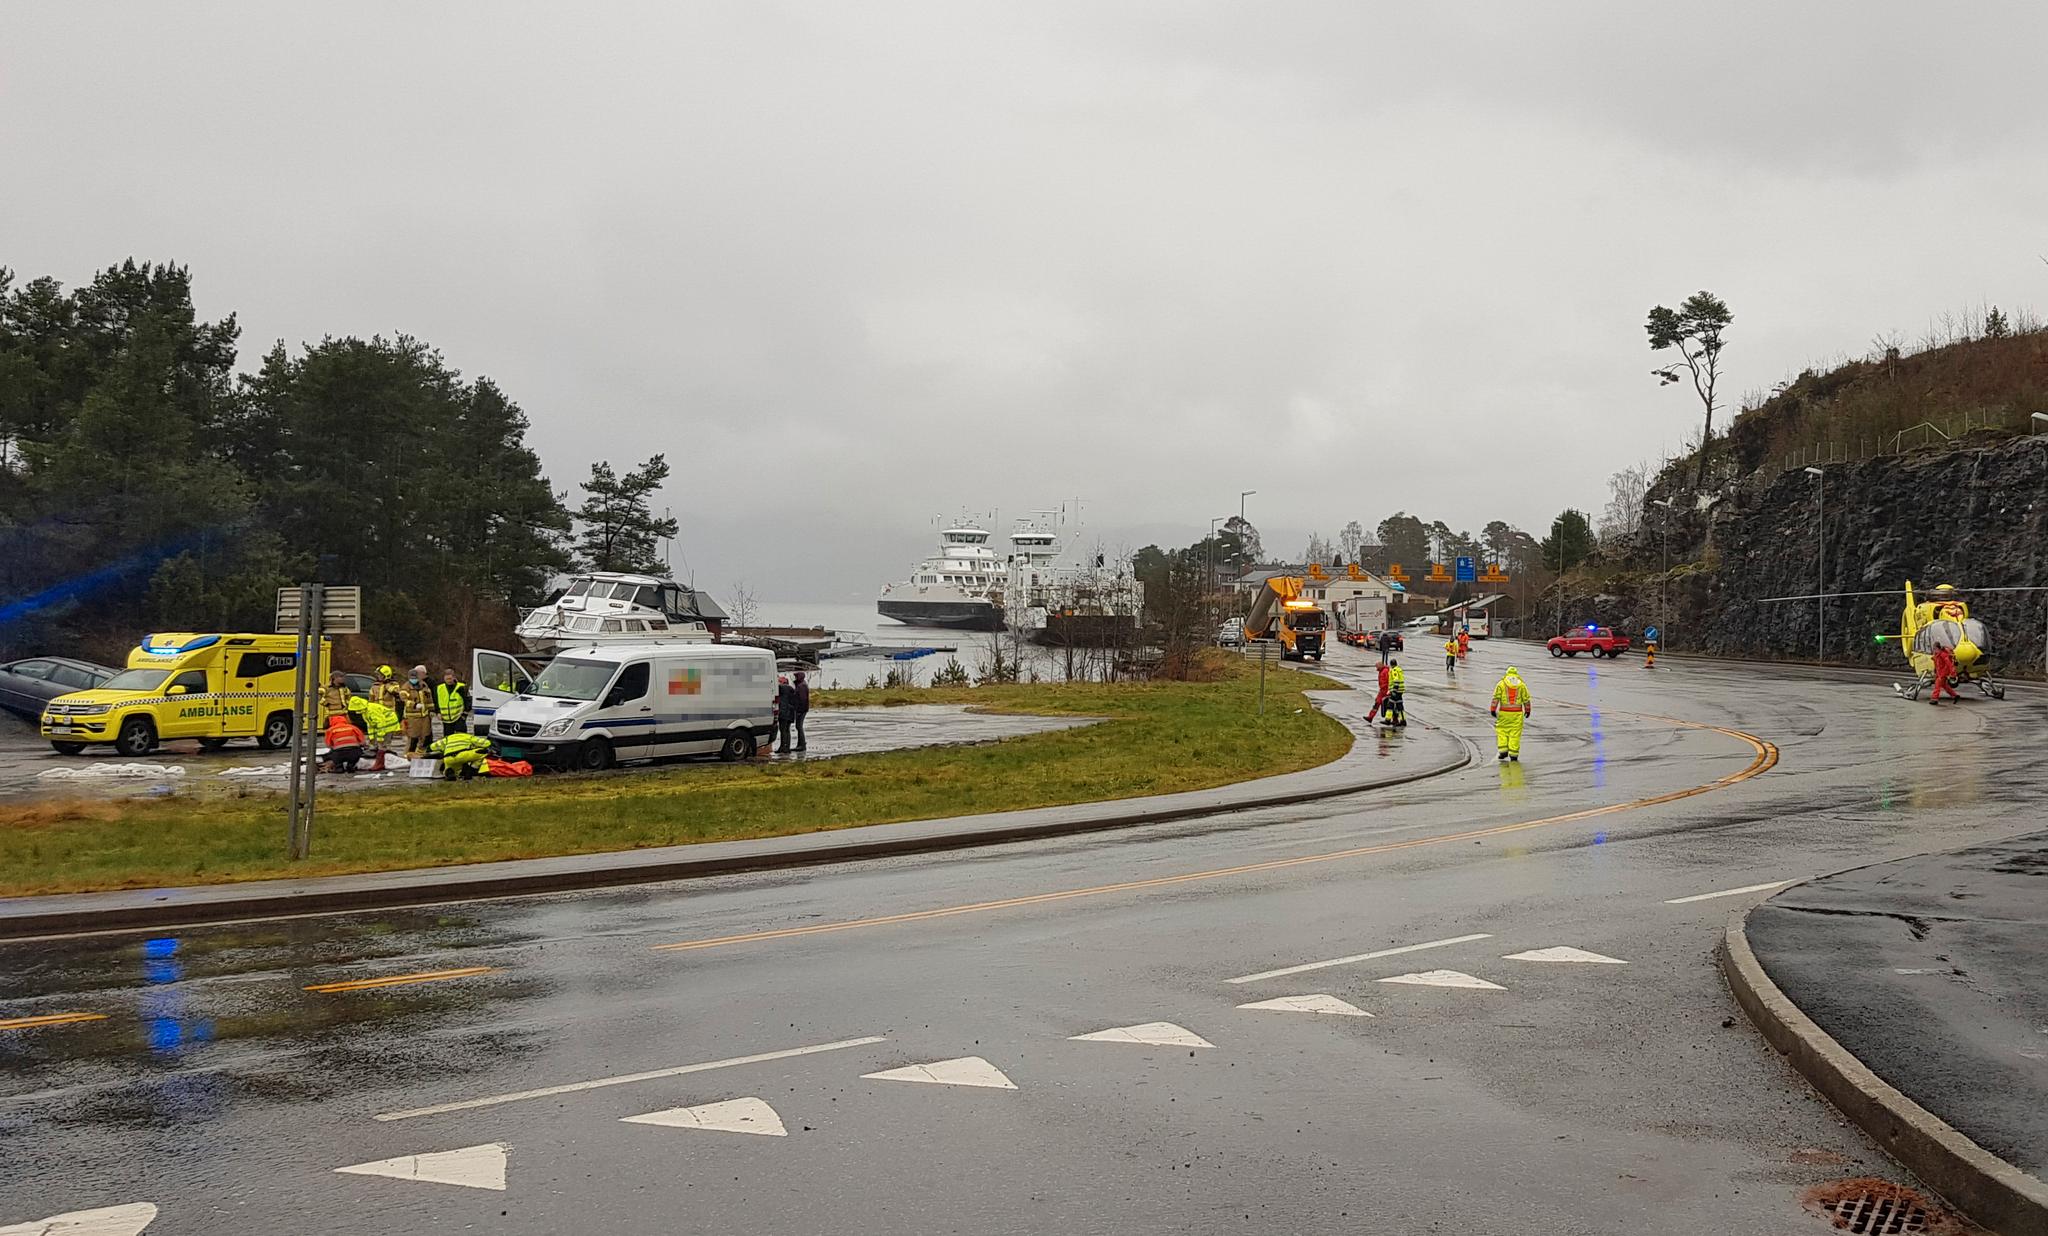 Fire personer ved en salgsbod på Gjermundshavn fergekai i Kvinnherad kommune ble mandag ettermiddag påkjørt av en bil. Alle fire er fløyet til sykehus. 